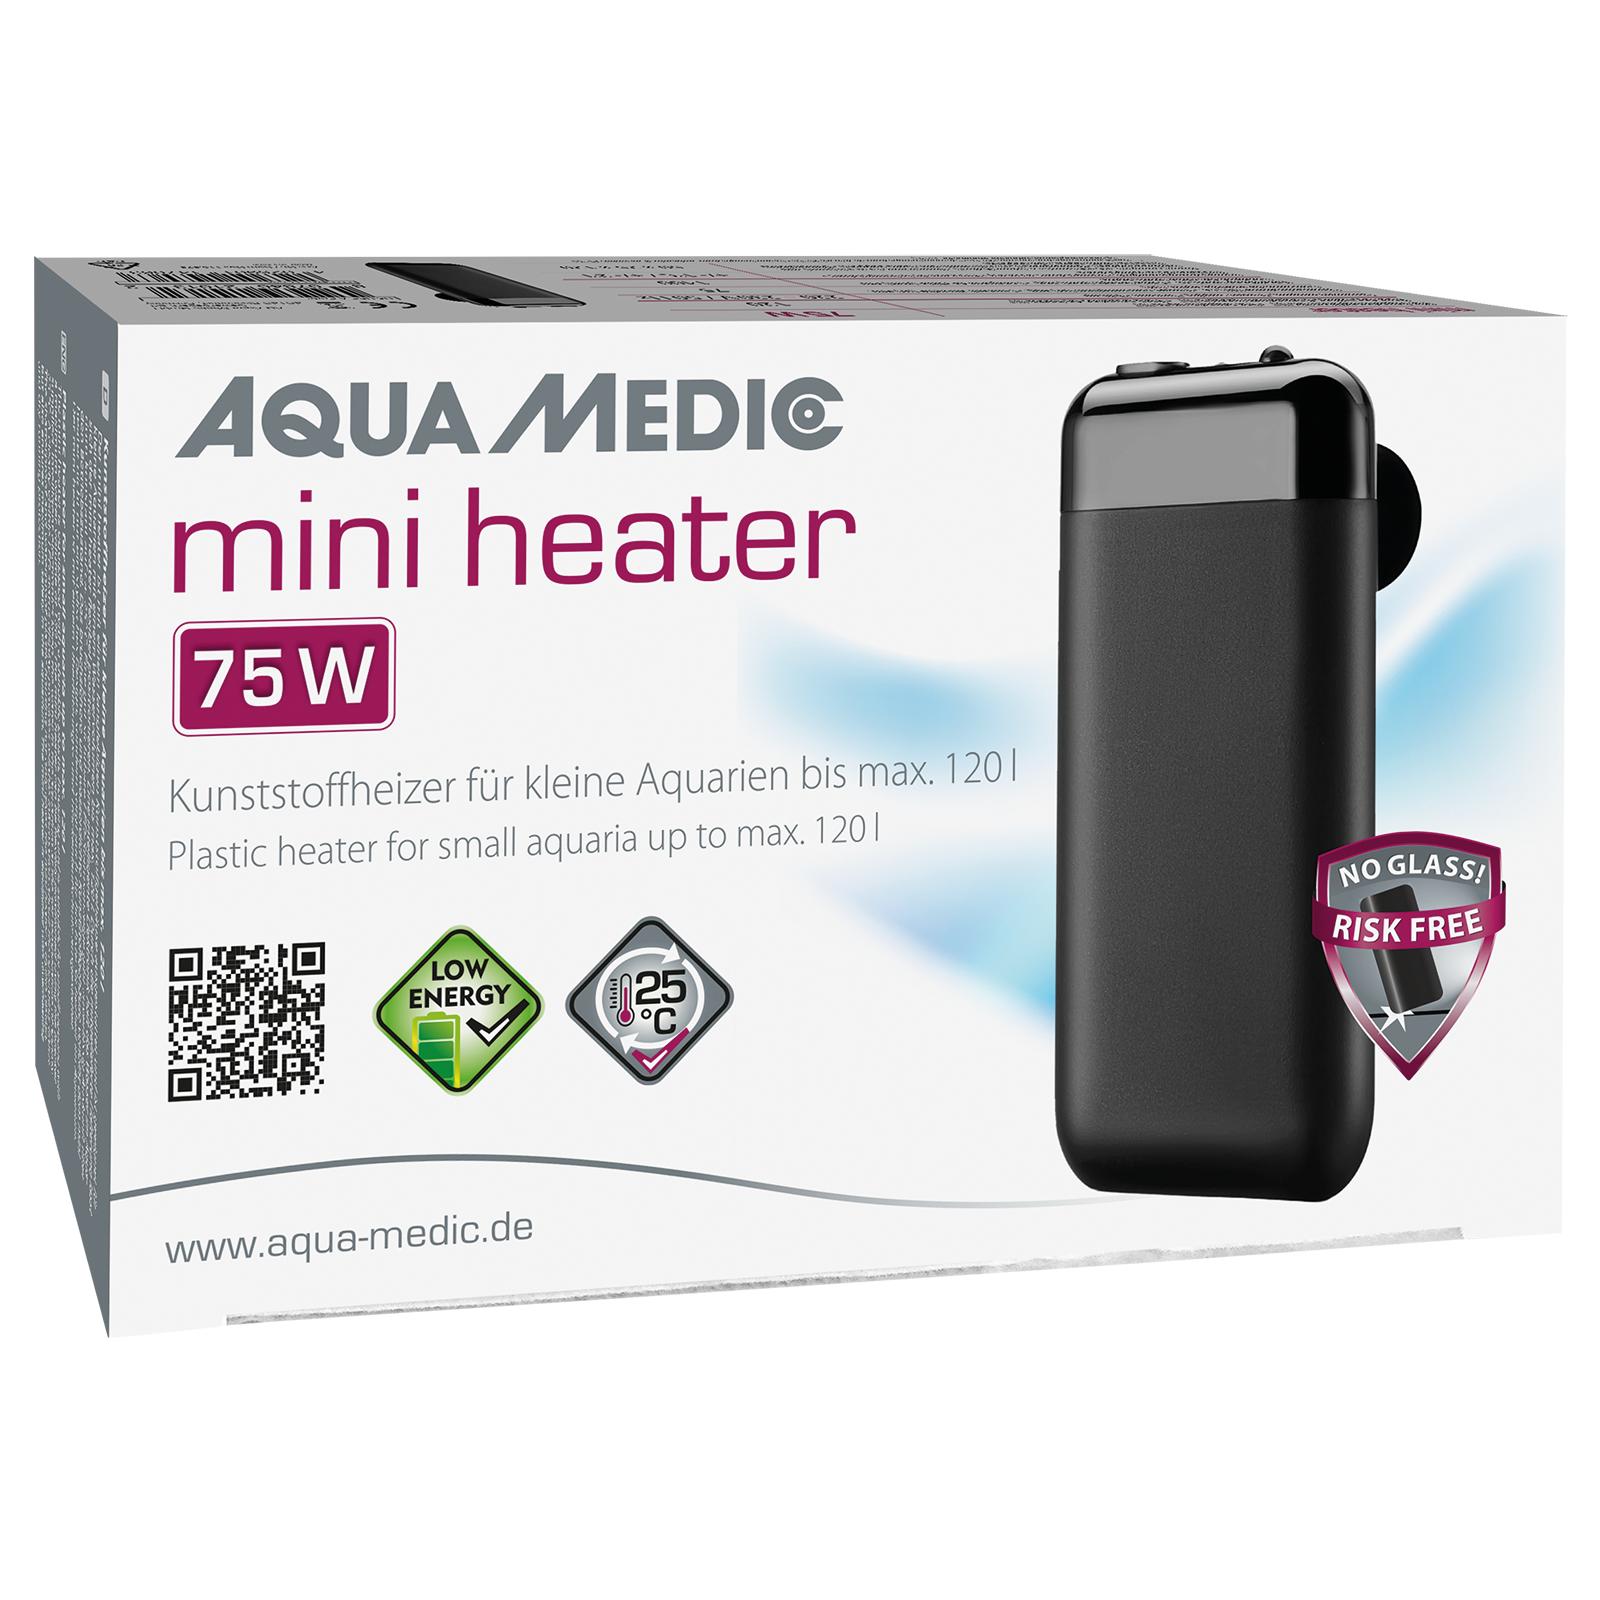 Aqua Medic mini heater